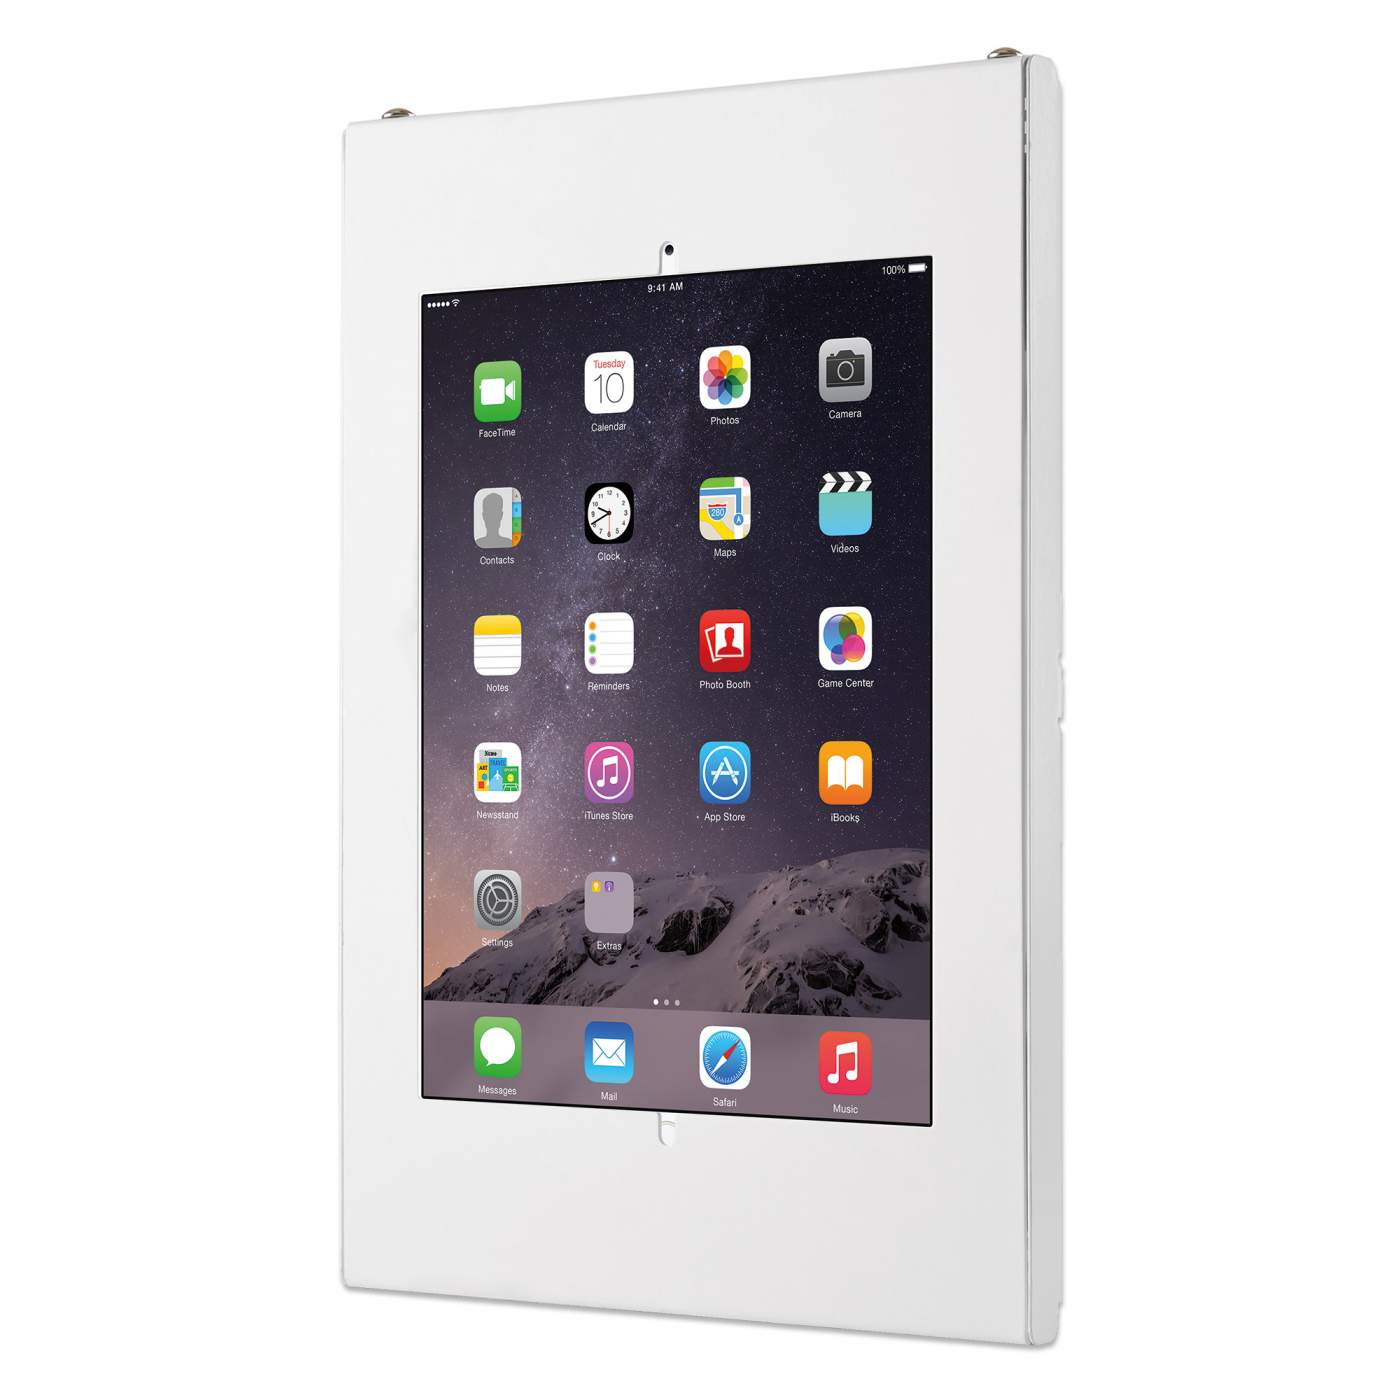 Soporte de pared para tablets iPad y Galaxy